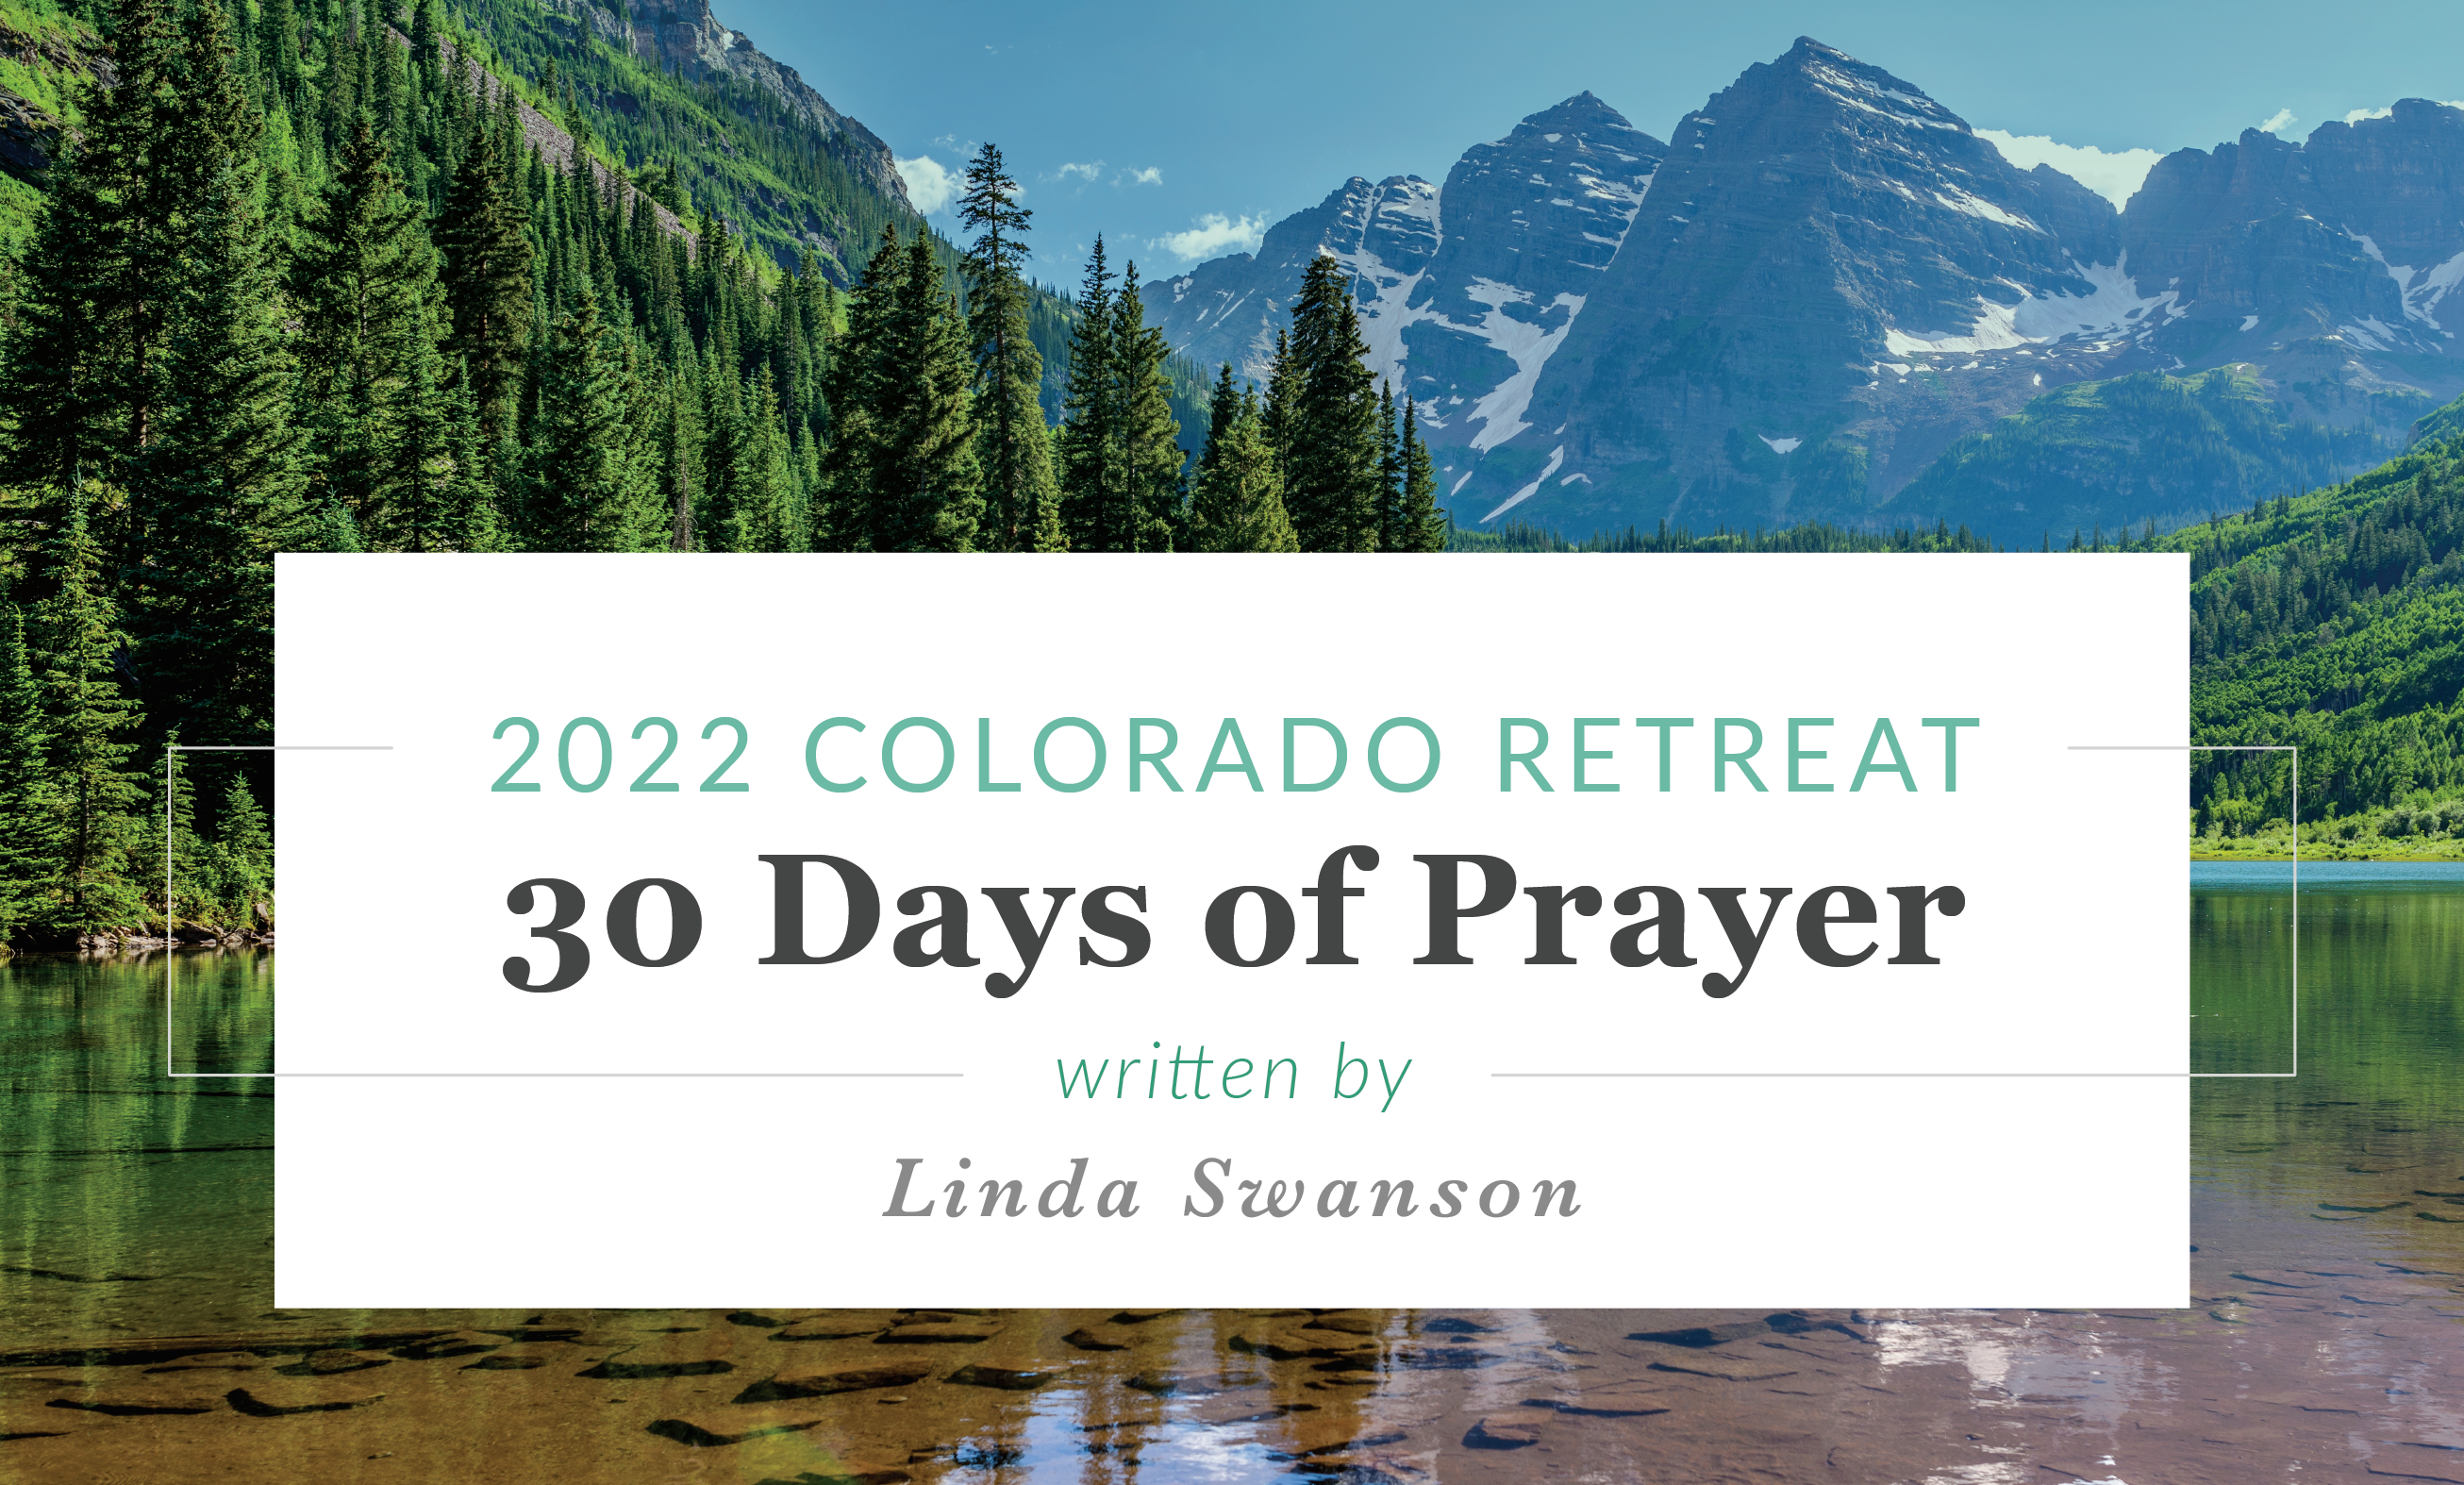 Prayers for the 2022 Colorado Retreat